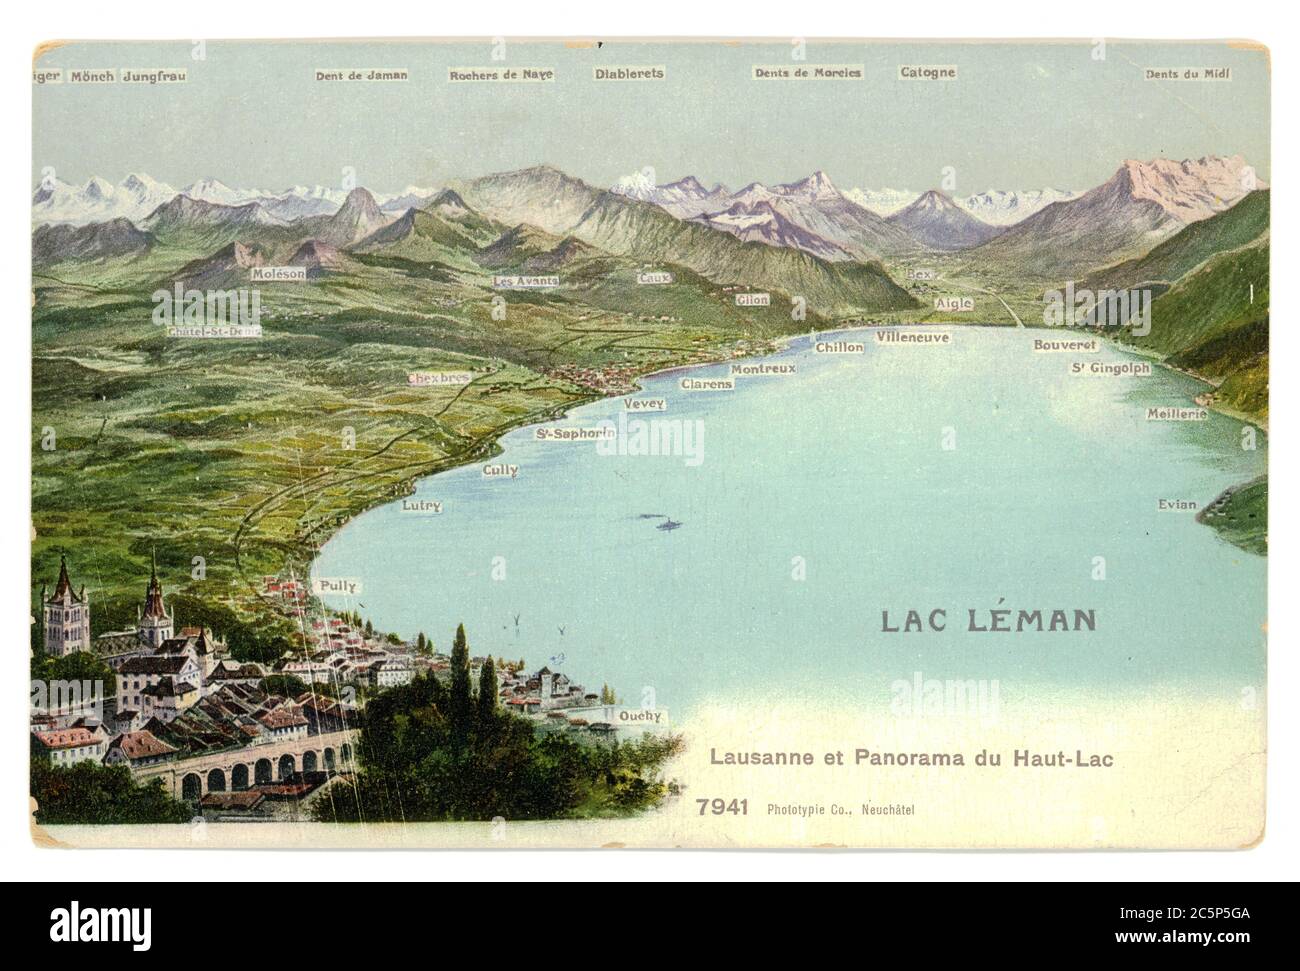 SCHWEIZ - UM 1910: Vintage Postkarte mit verwitterten Kanten auf weißem Hintergrund gedruckt 1910, Schweiz. Retro Luftpanorama des Genfer Sees Stockfoto